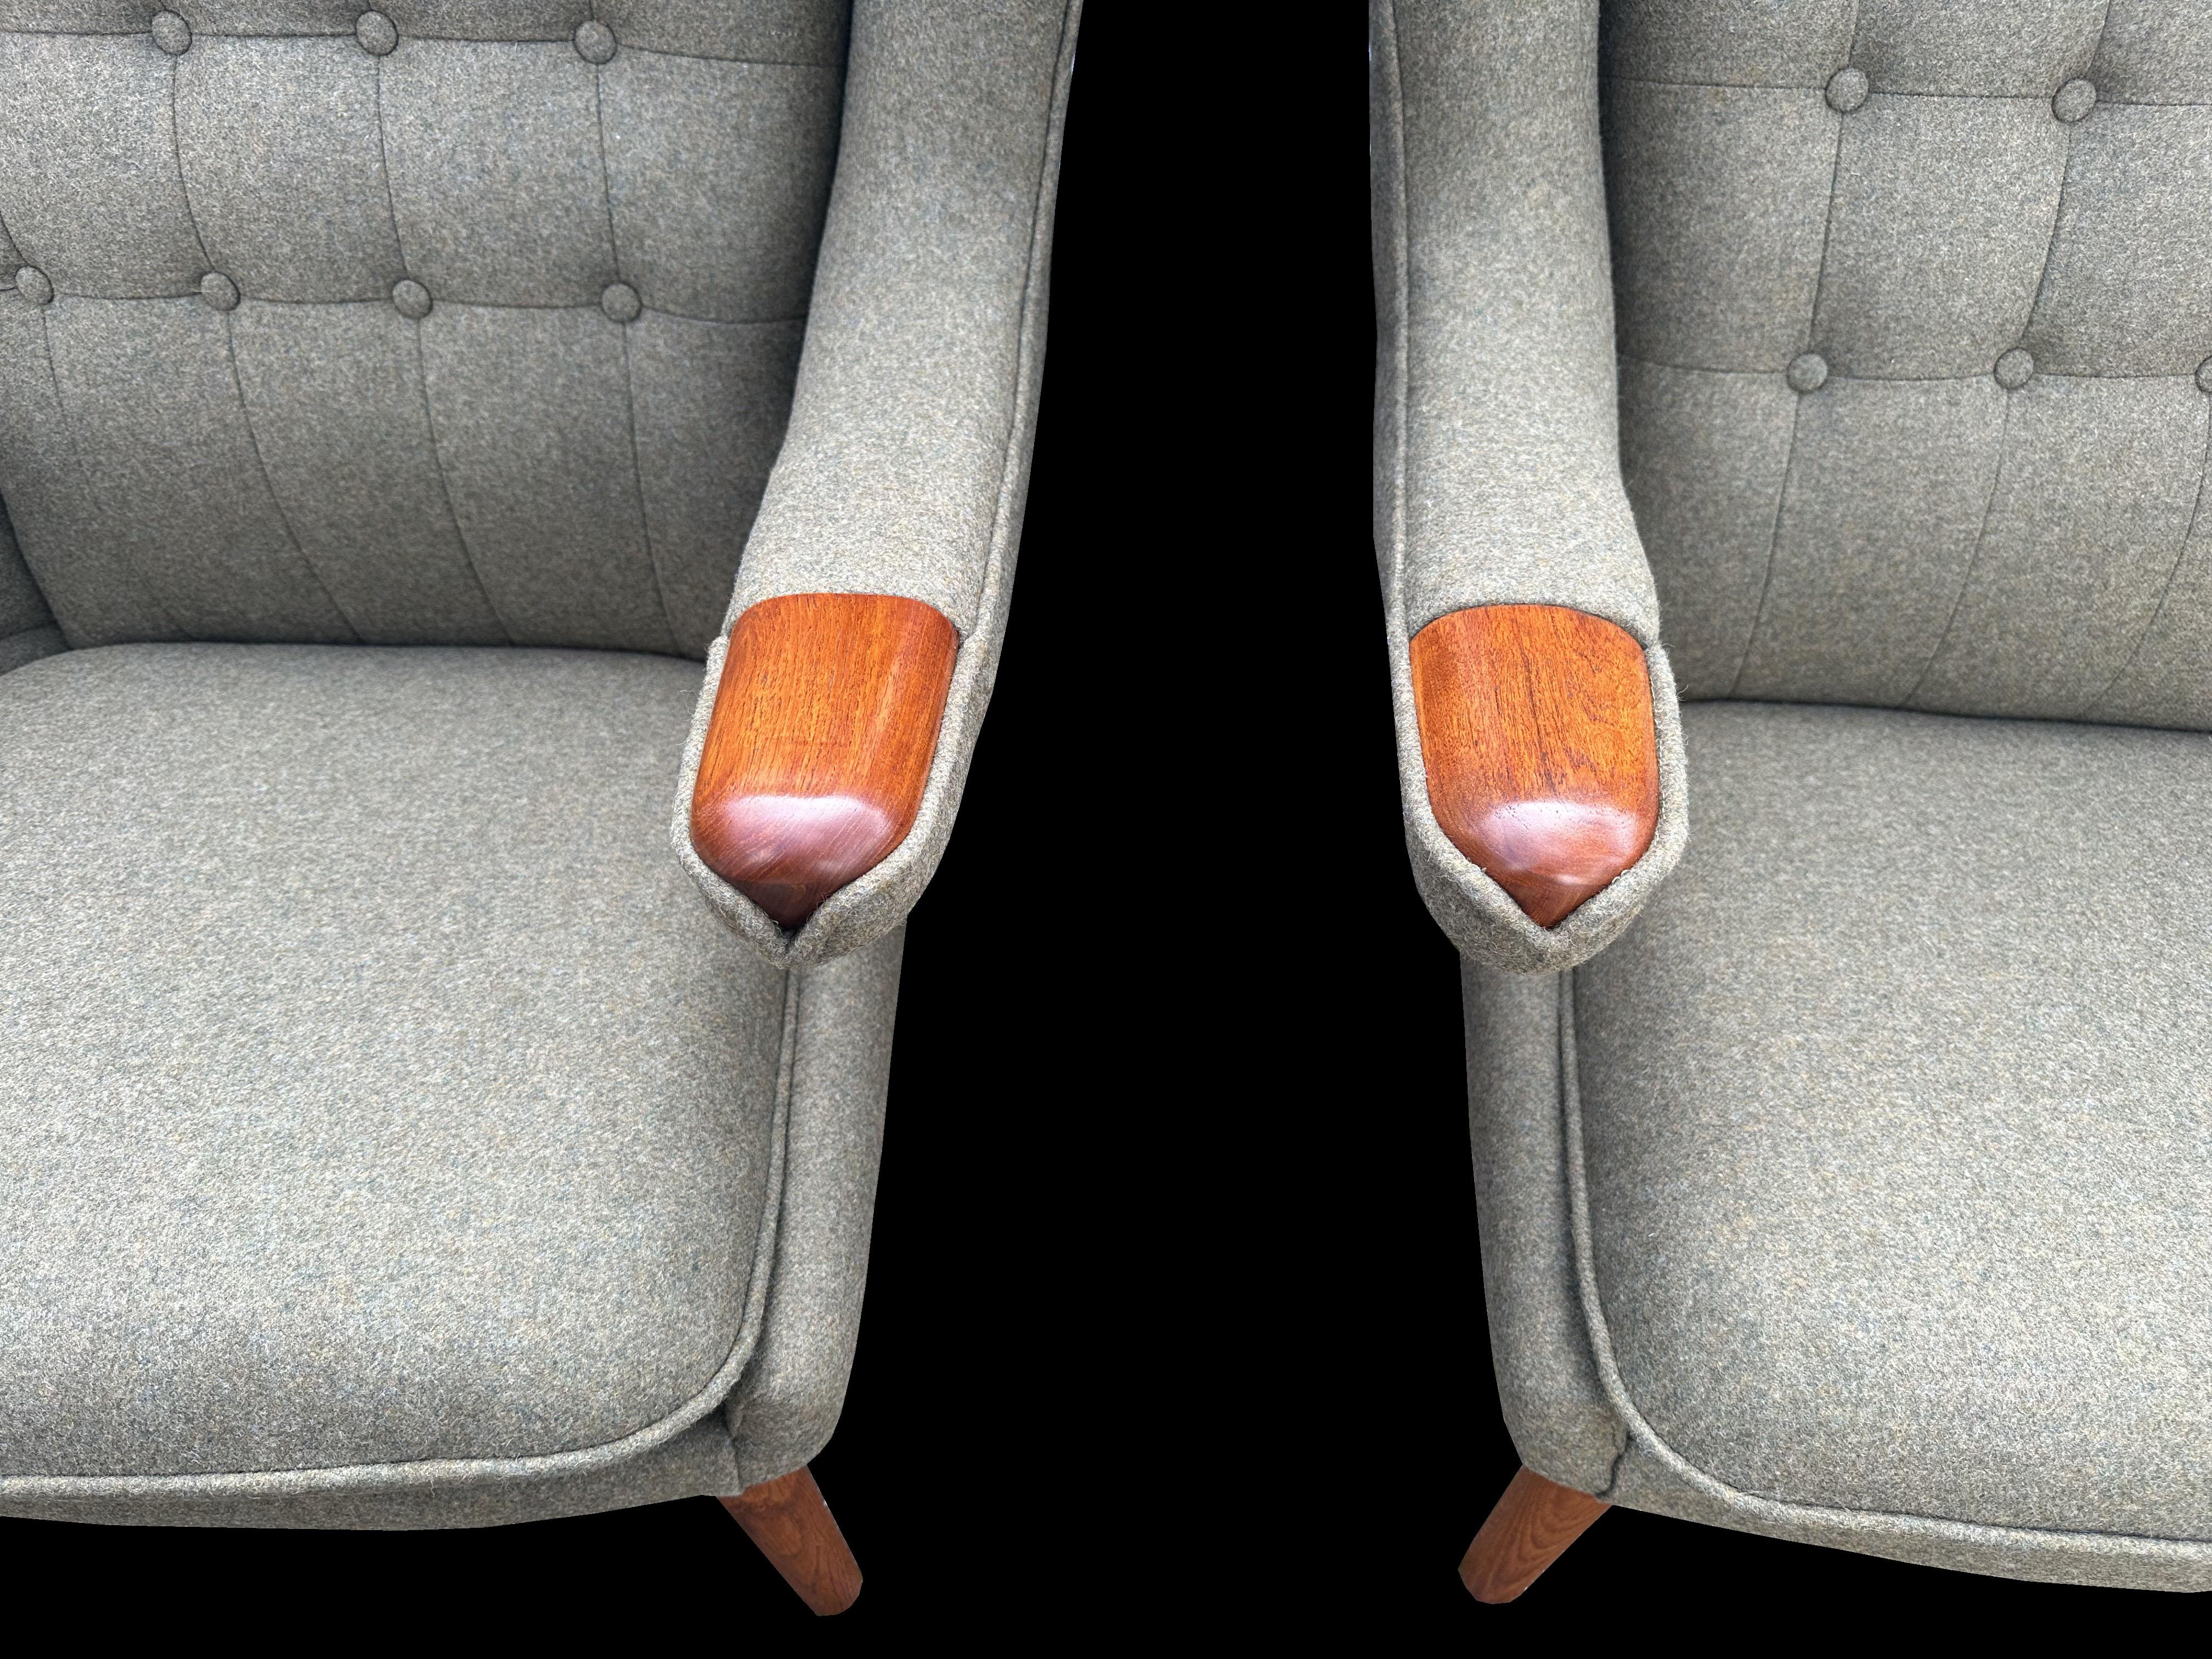 Wir haben zwei identische original vintage Papa Bär Stühle von Hans J Wegner für A. P. Stolen, mit Teak 'Paws' beide frisch bezogen in Qualität fern grünem Stoff von Abraham Moon.
Sie sind verfügbar und werden pro Stuhl berechnet.